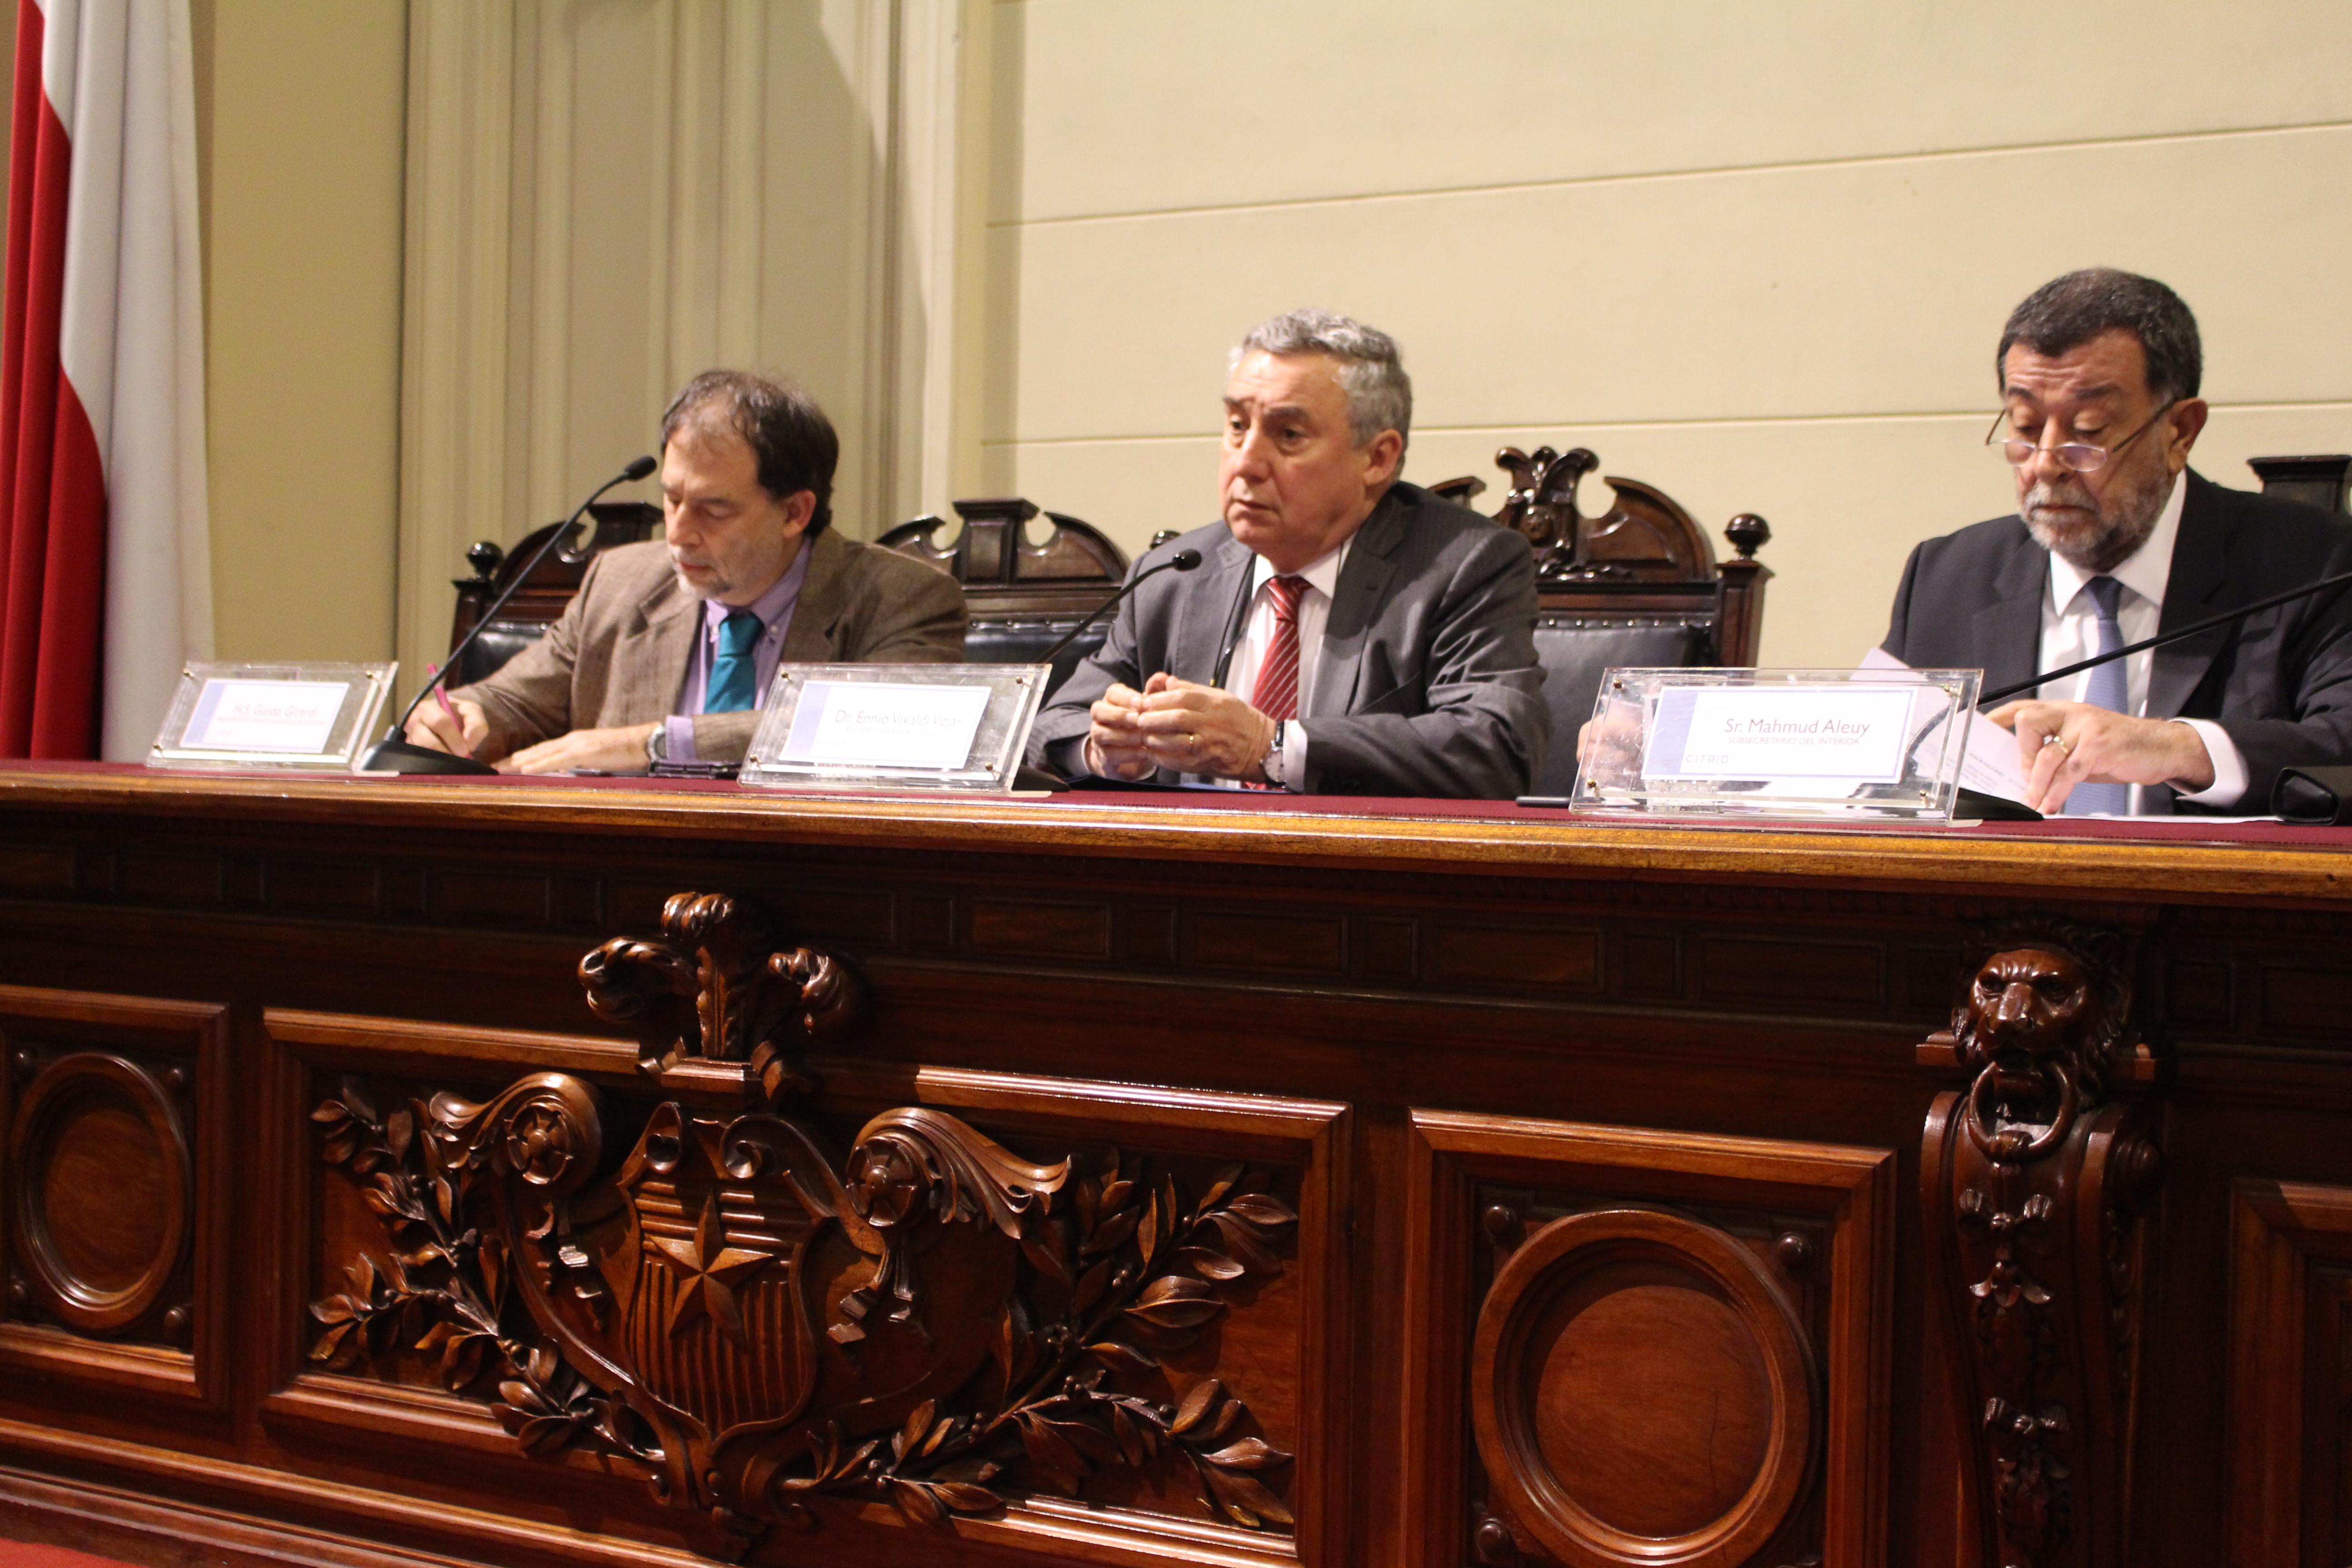 La actividad estuvo encabezada por el senador Guido Guirardi, el rector Ennio Vivaldi y el subsecretario de Vivienda, Mahmud Aleuy.